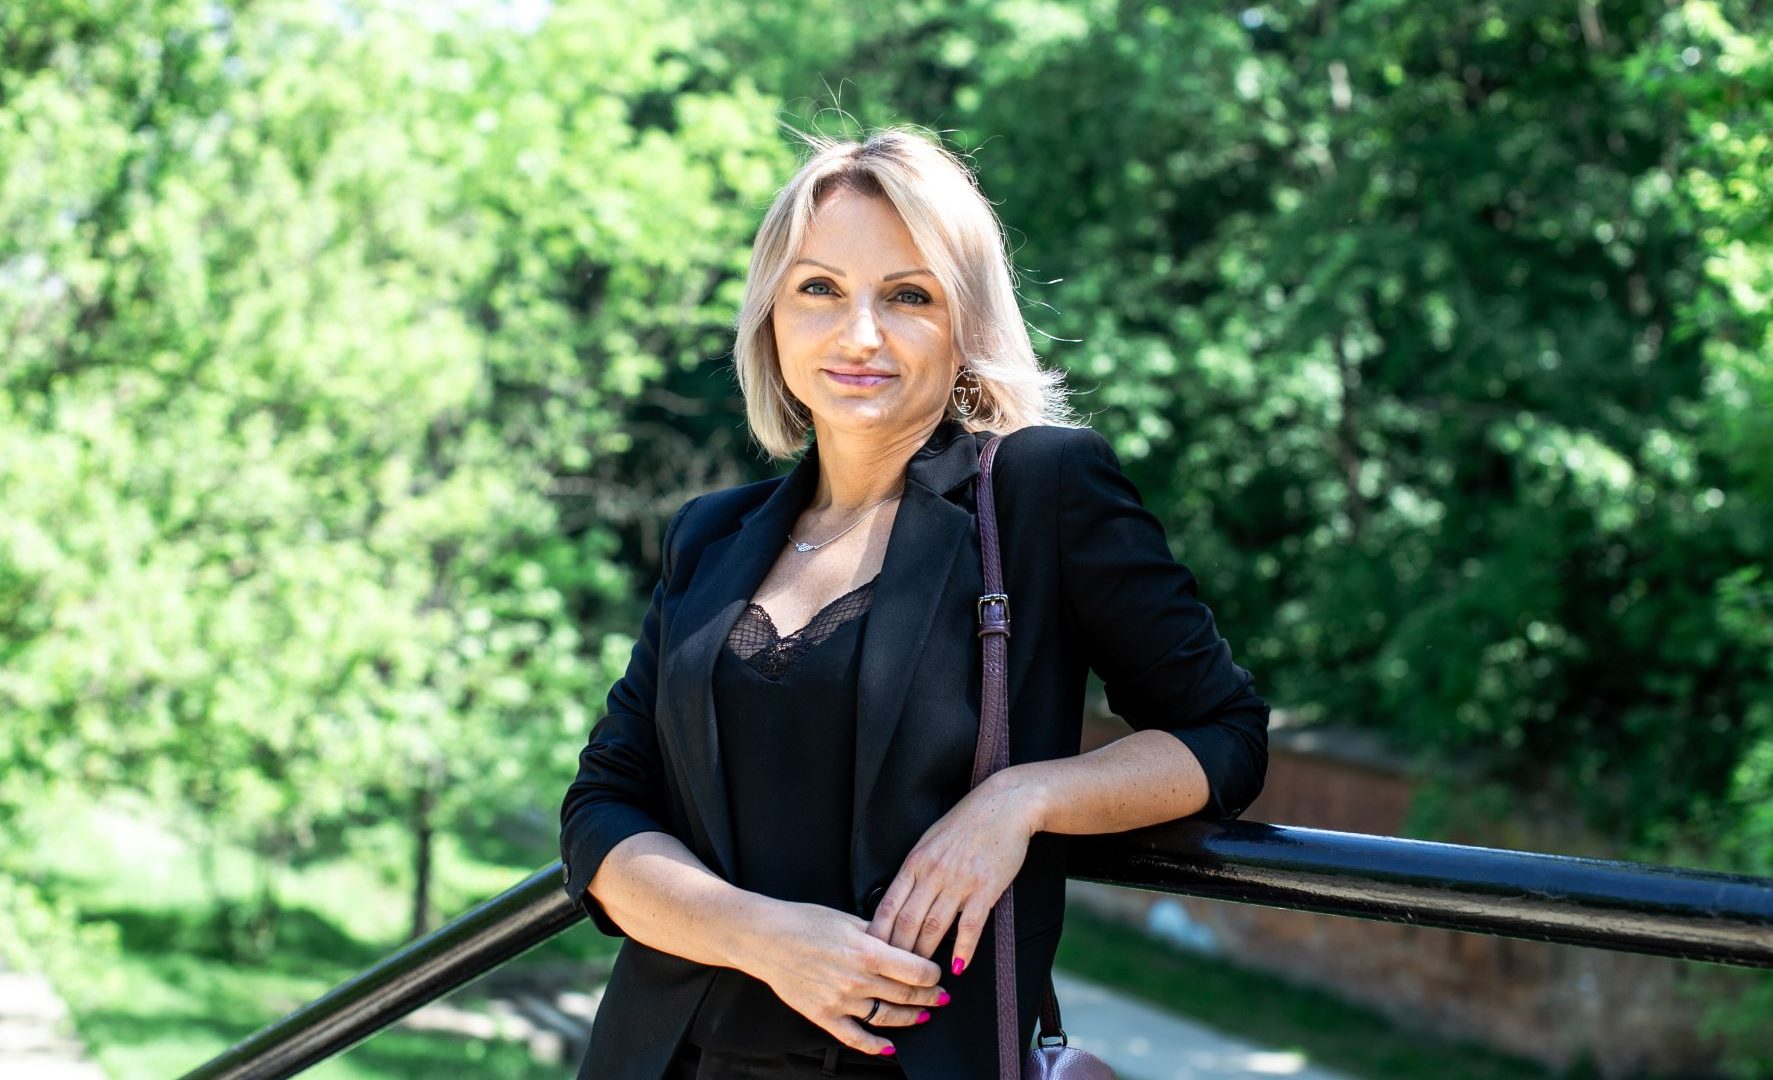 Renata Jaworska – Top 5 Personality of the Year in Real Estate